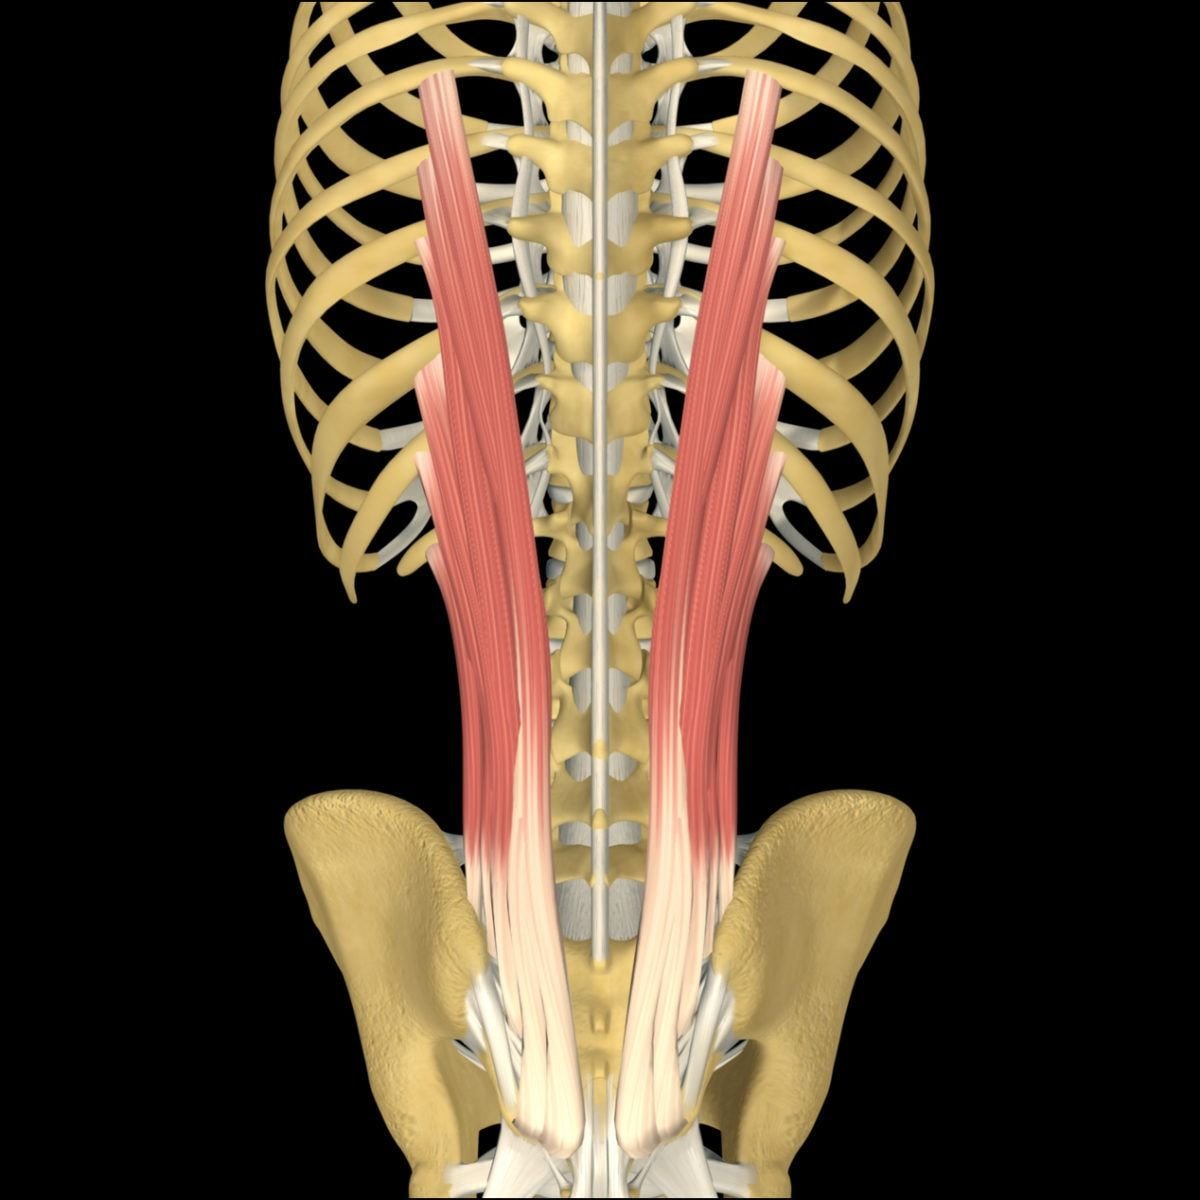 M Erector Spinae анатомия